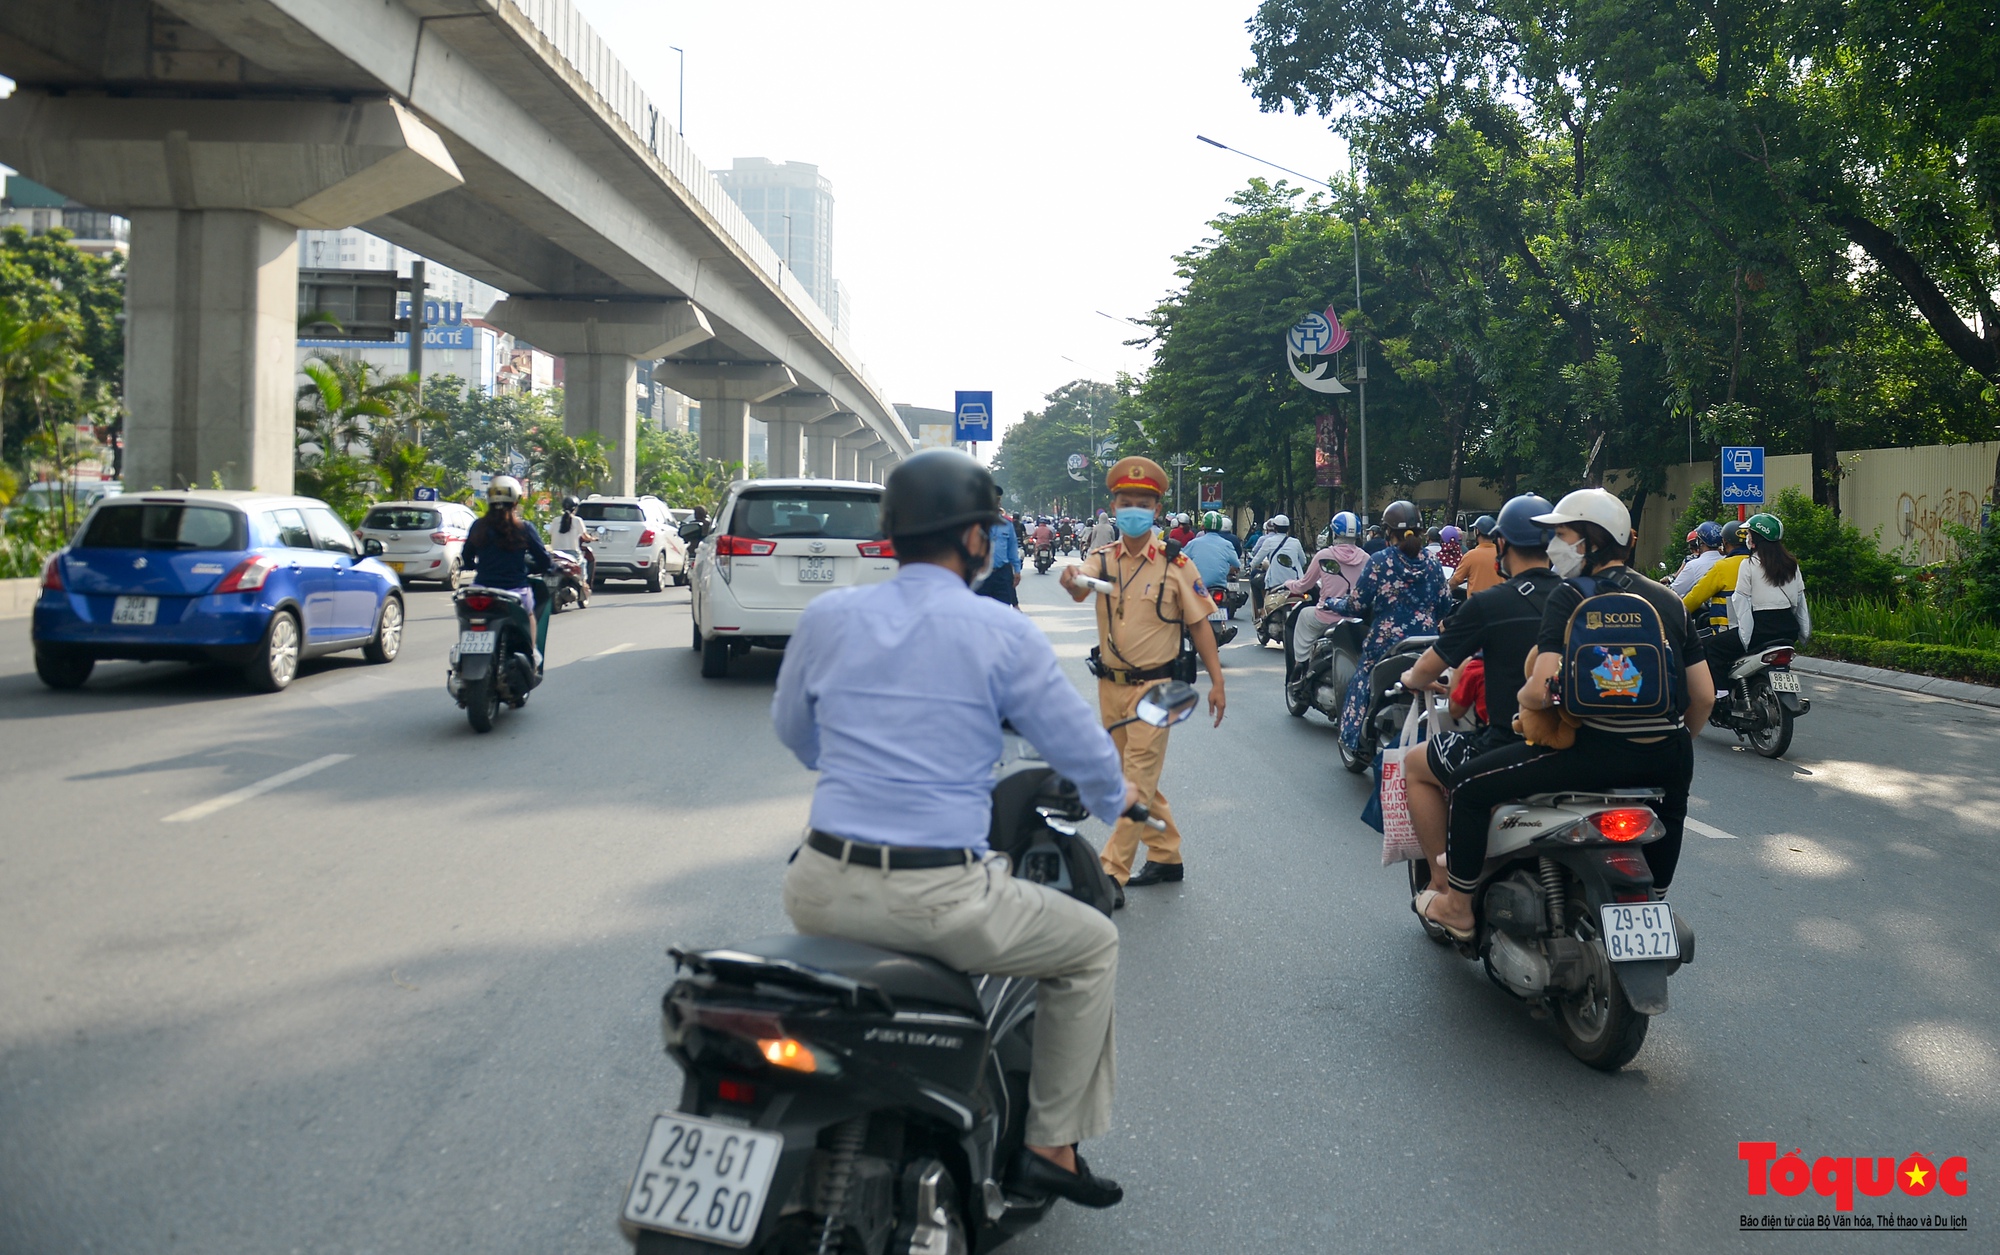 Hà Nội: Giao thông lộn xộn trên đường Nguyễn Trãi sau phân làn mới - Ảnh 15.